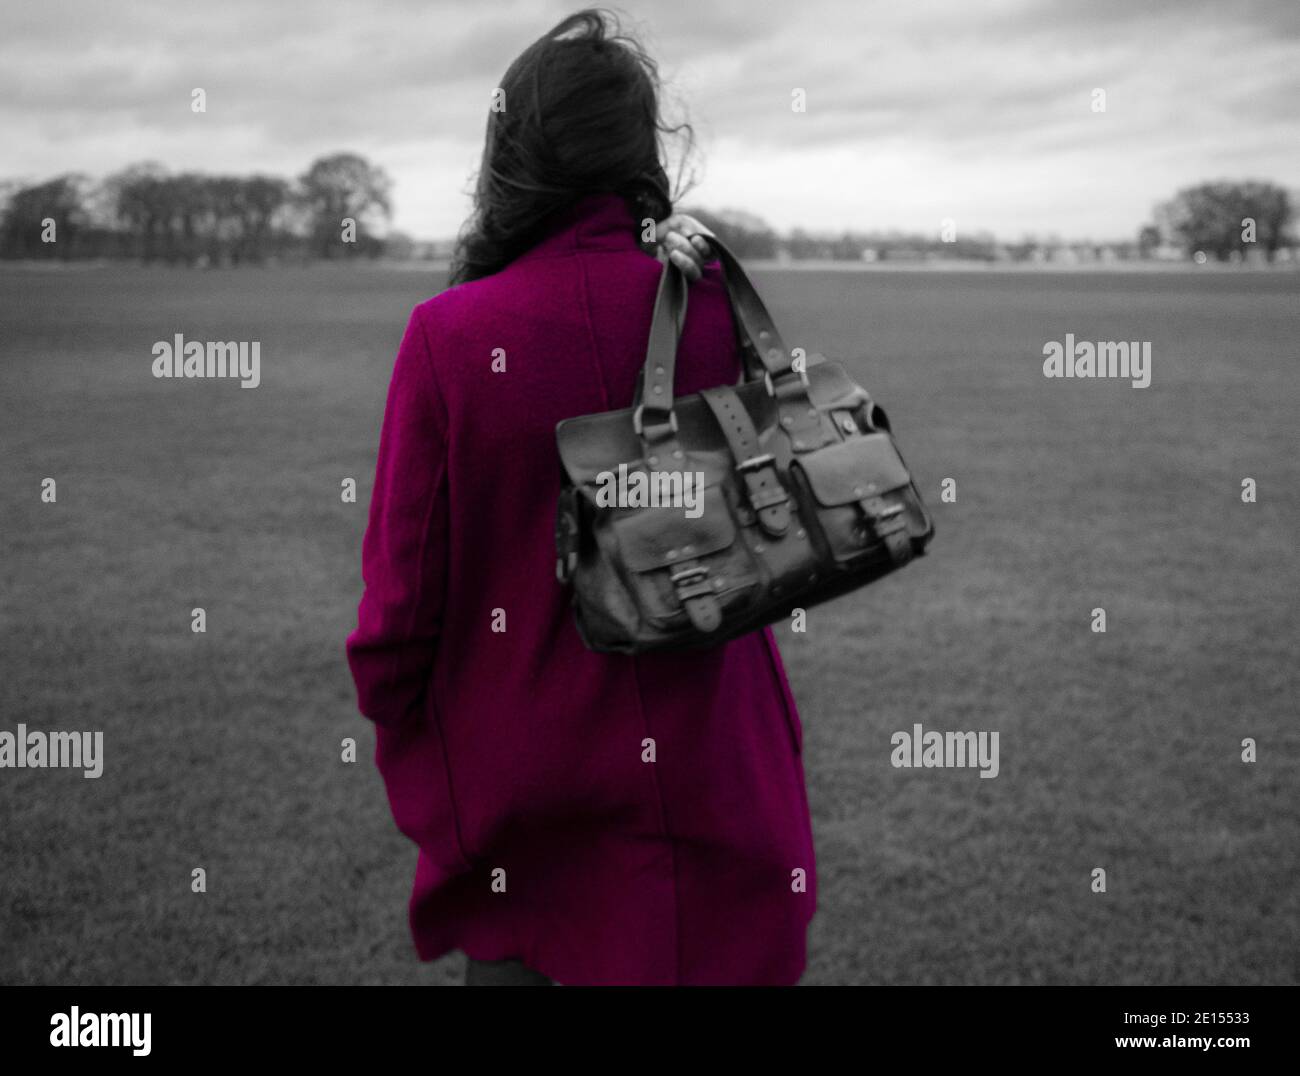 Vista posteriore con messa a fuoco morbida della donna che tiene la borsa in pelle Mulberry Roxanne sopra le spalle nel parco. Colore desaturato con pop di colore magenta Foto Stock